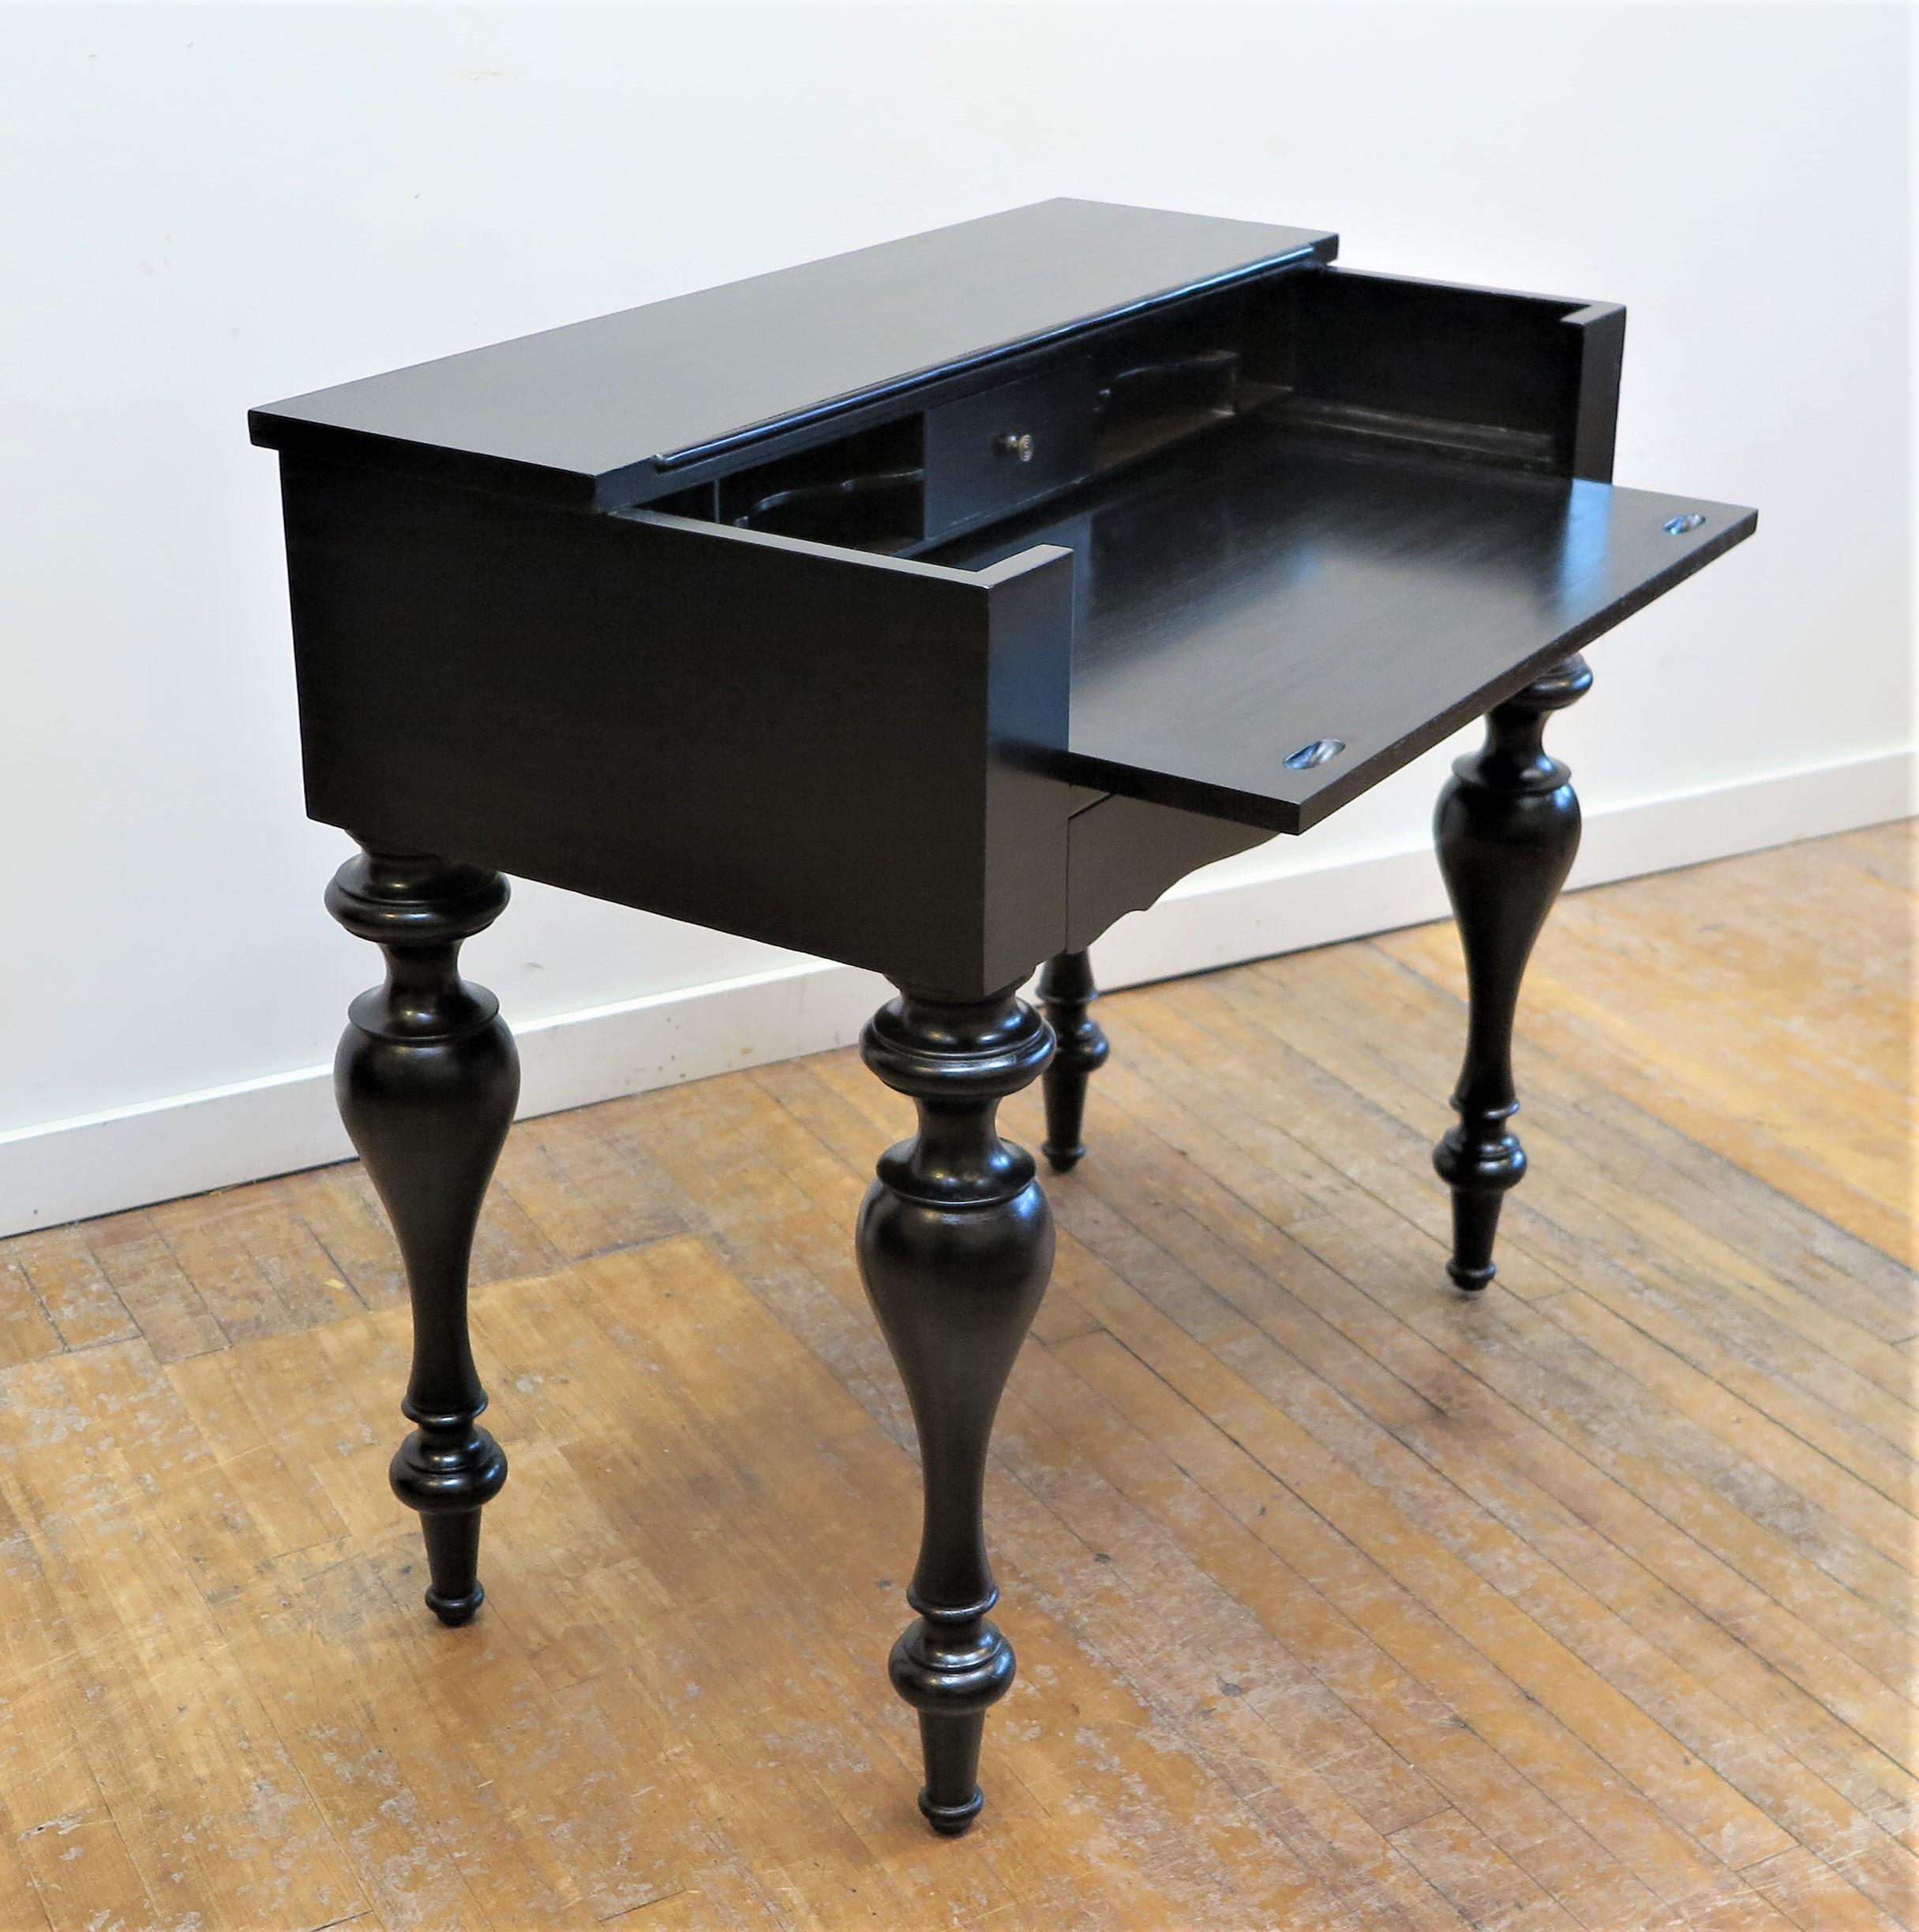 Antique Spinet Secretary Desk - For Sale on 1stDibs | spinet desk